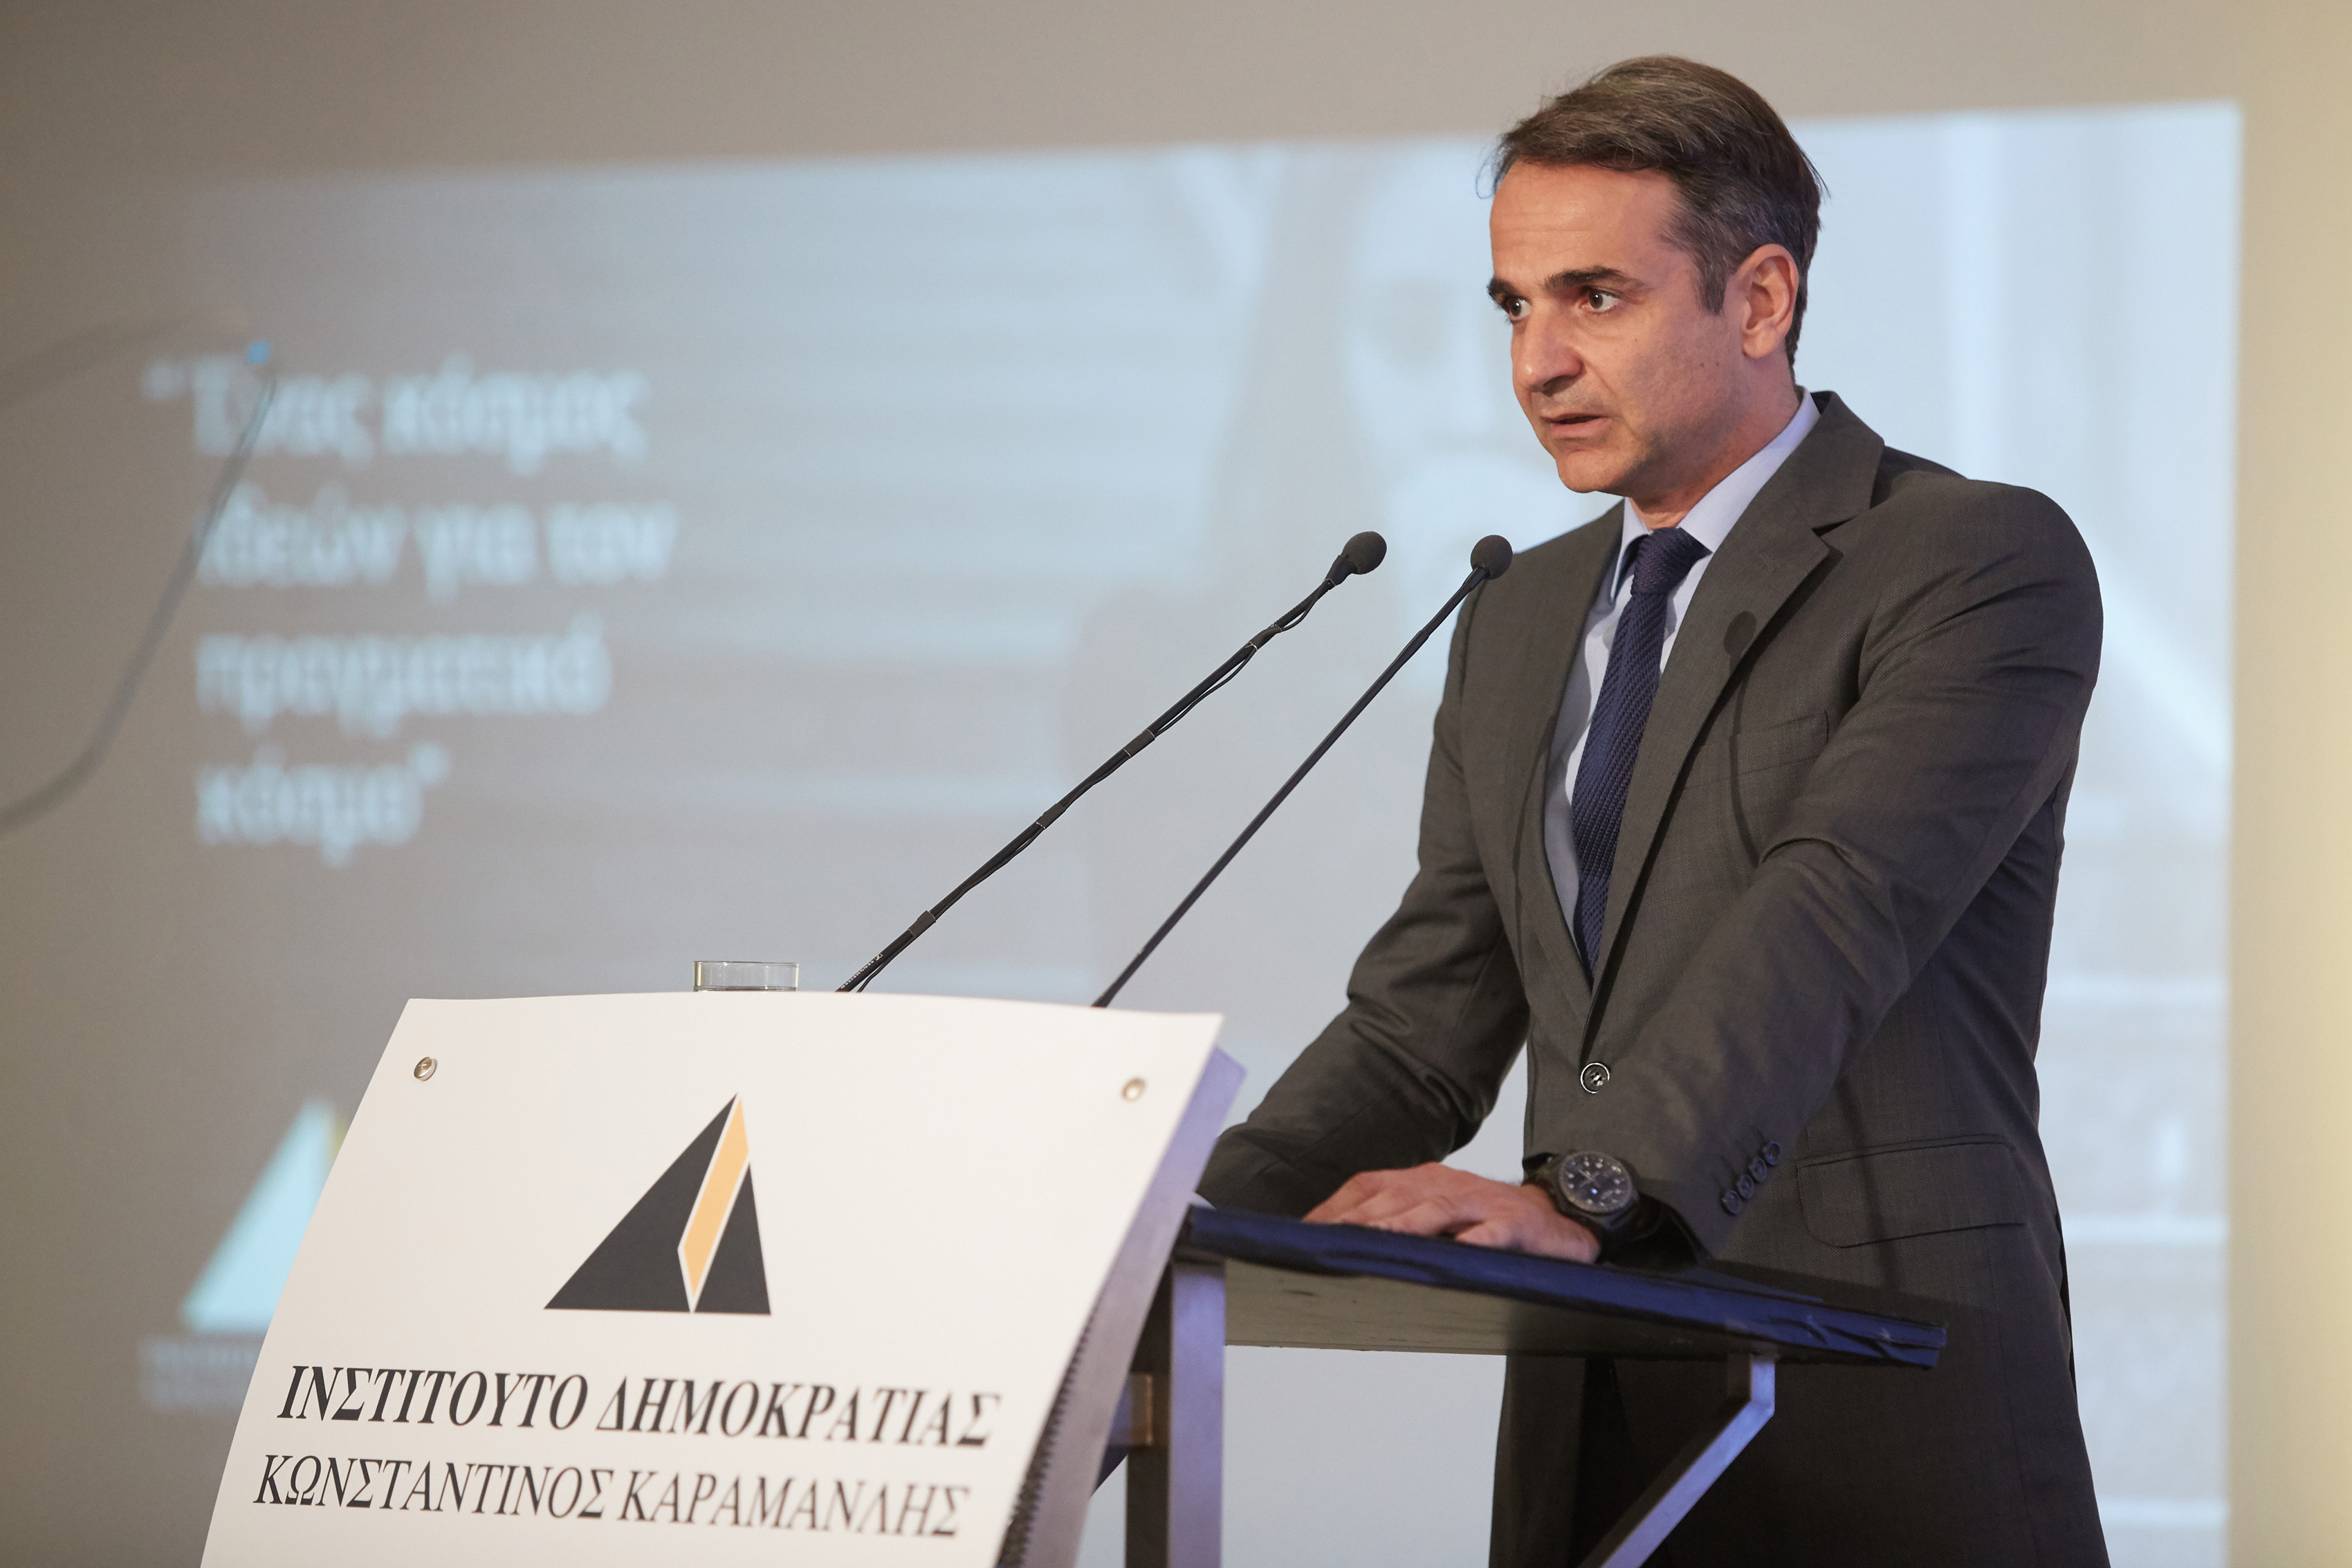 Κ.Μητσοτάκης: Το κομματικό κράτος του ΣΥΡΙΖΑ θα ξηλωθεί